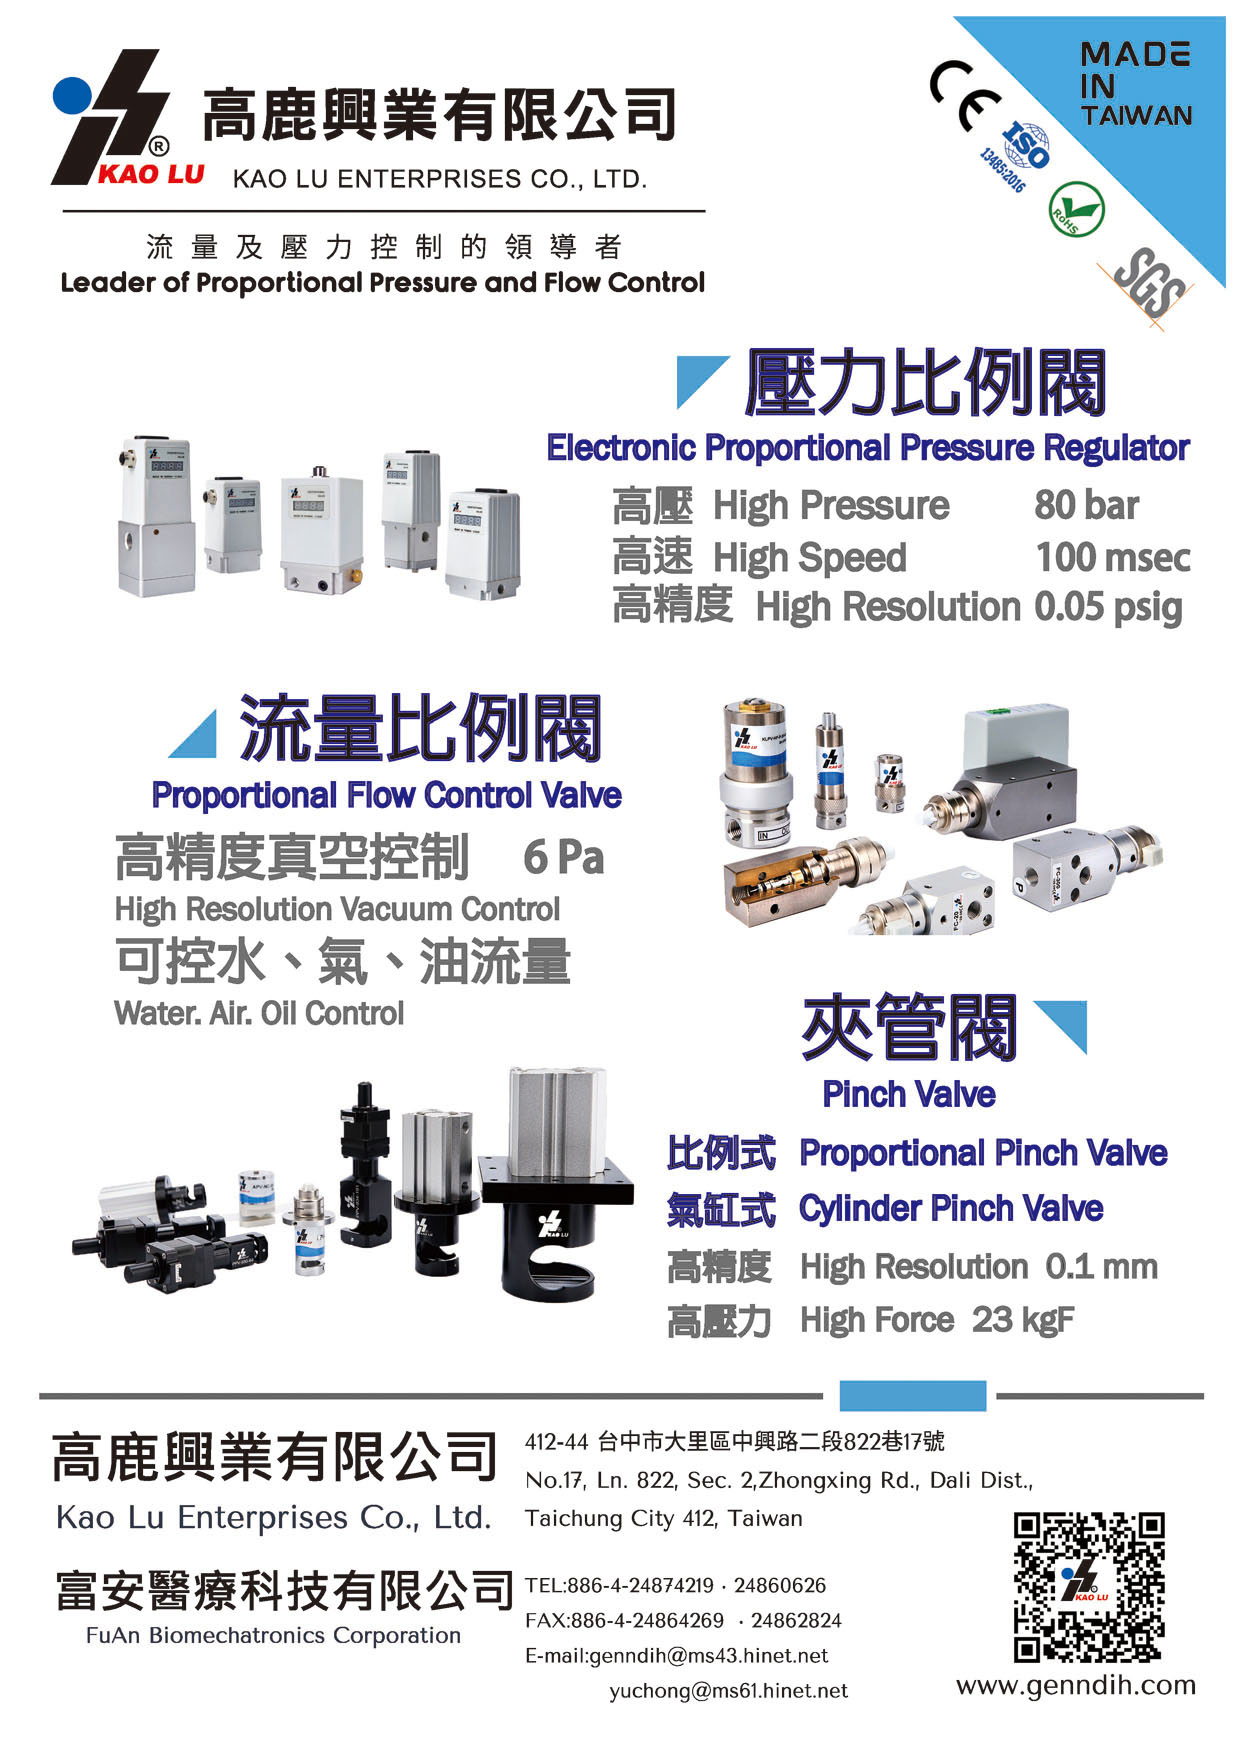 Who Makes Machinery in Taiwan GENN DIH ENTERPRISE CO., LTD.